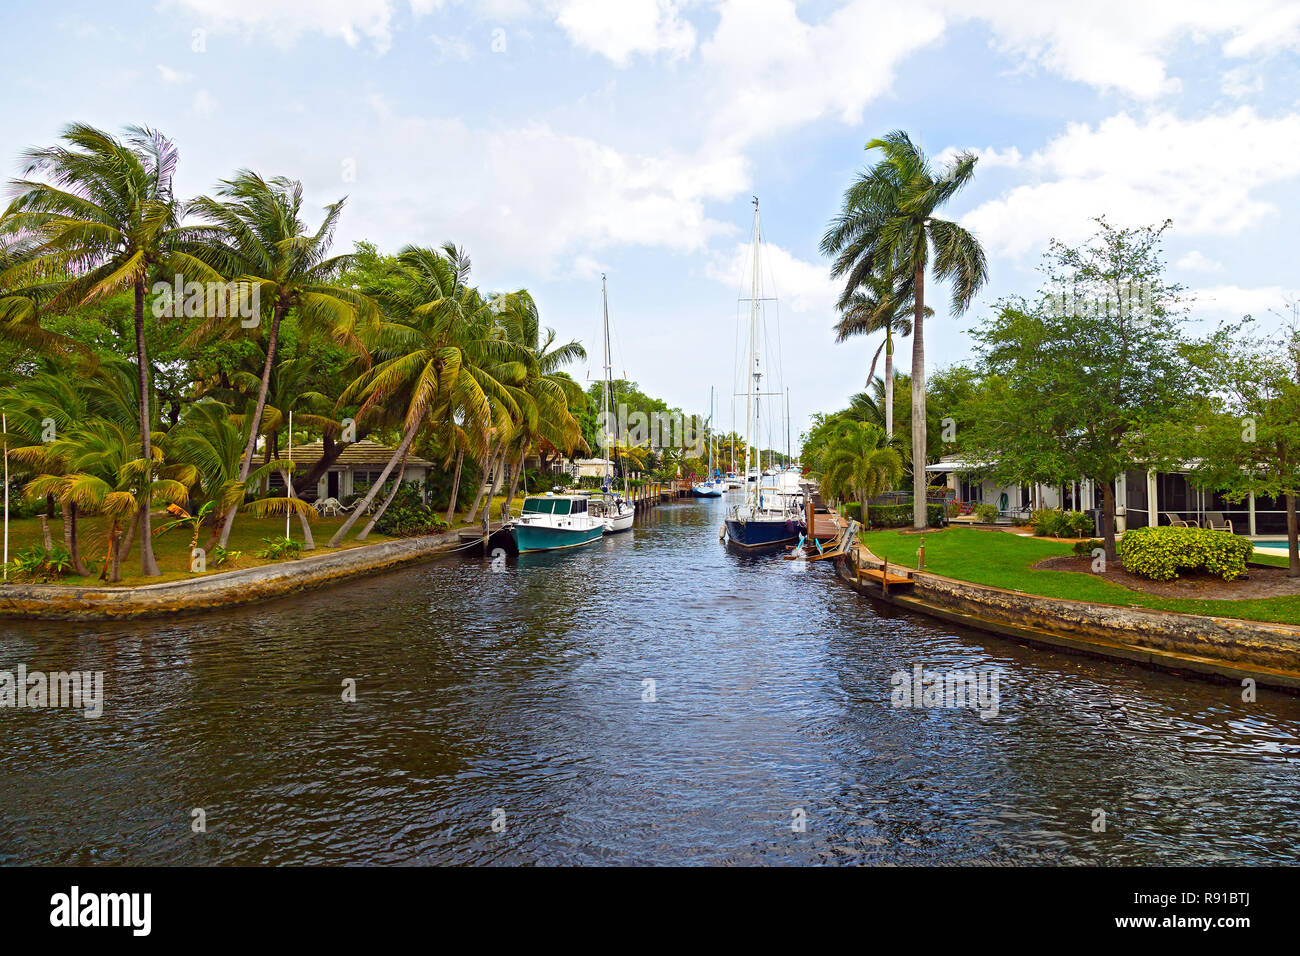 Bateaux amarrés le long du canal dans la banlieue de Miami, Floride. Palmiers et disponibles sous le bleu ciel nuageux. Banque D'Images